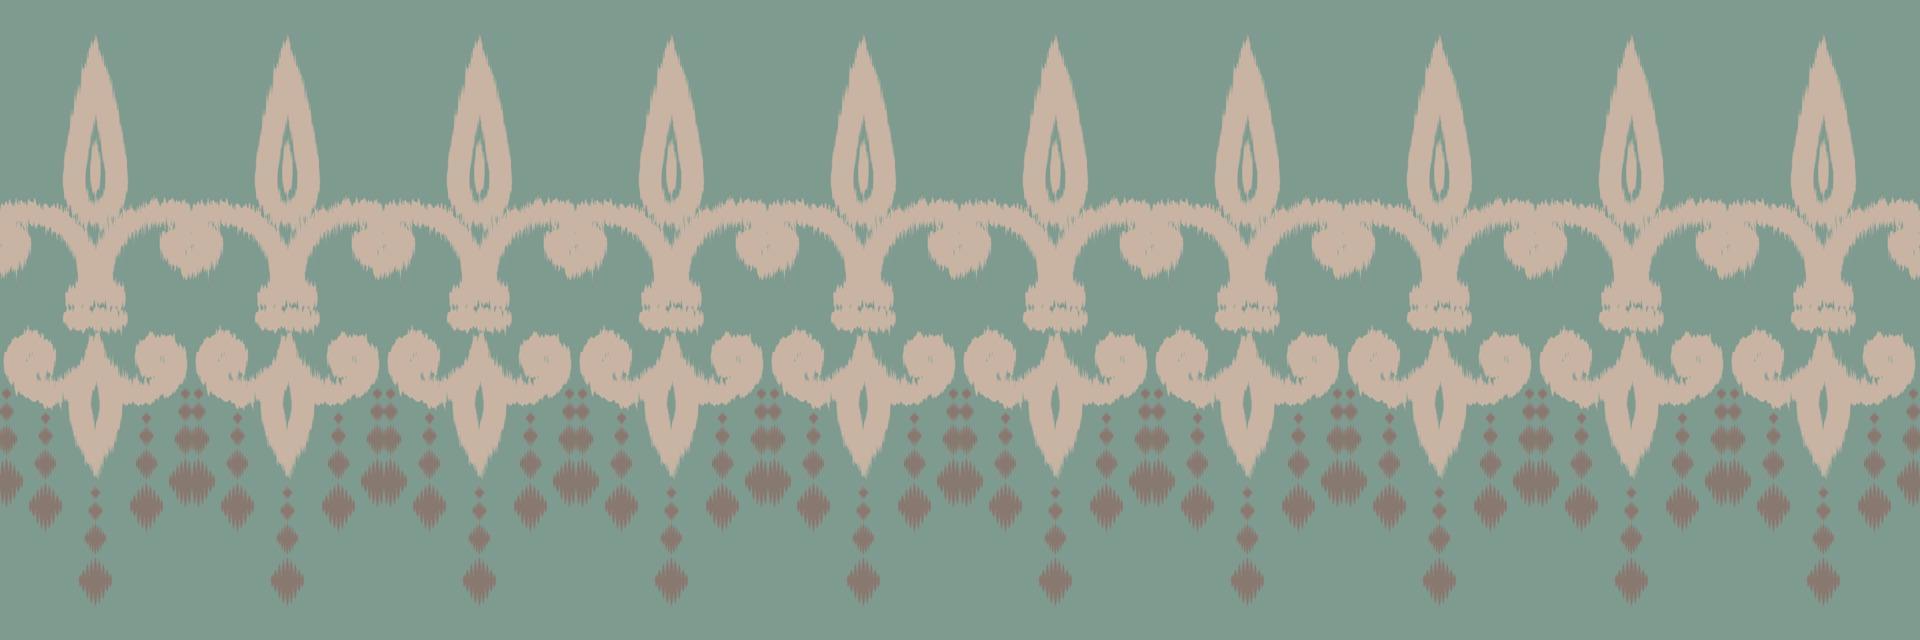 vetor étnico ikat batik têxtil padrão sem costura design de vetor digital para impressão saree kurti borneo tecido borda escova símbolos amostras roupas de festa